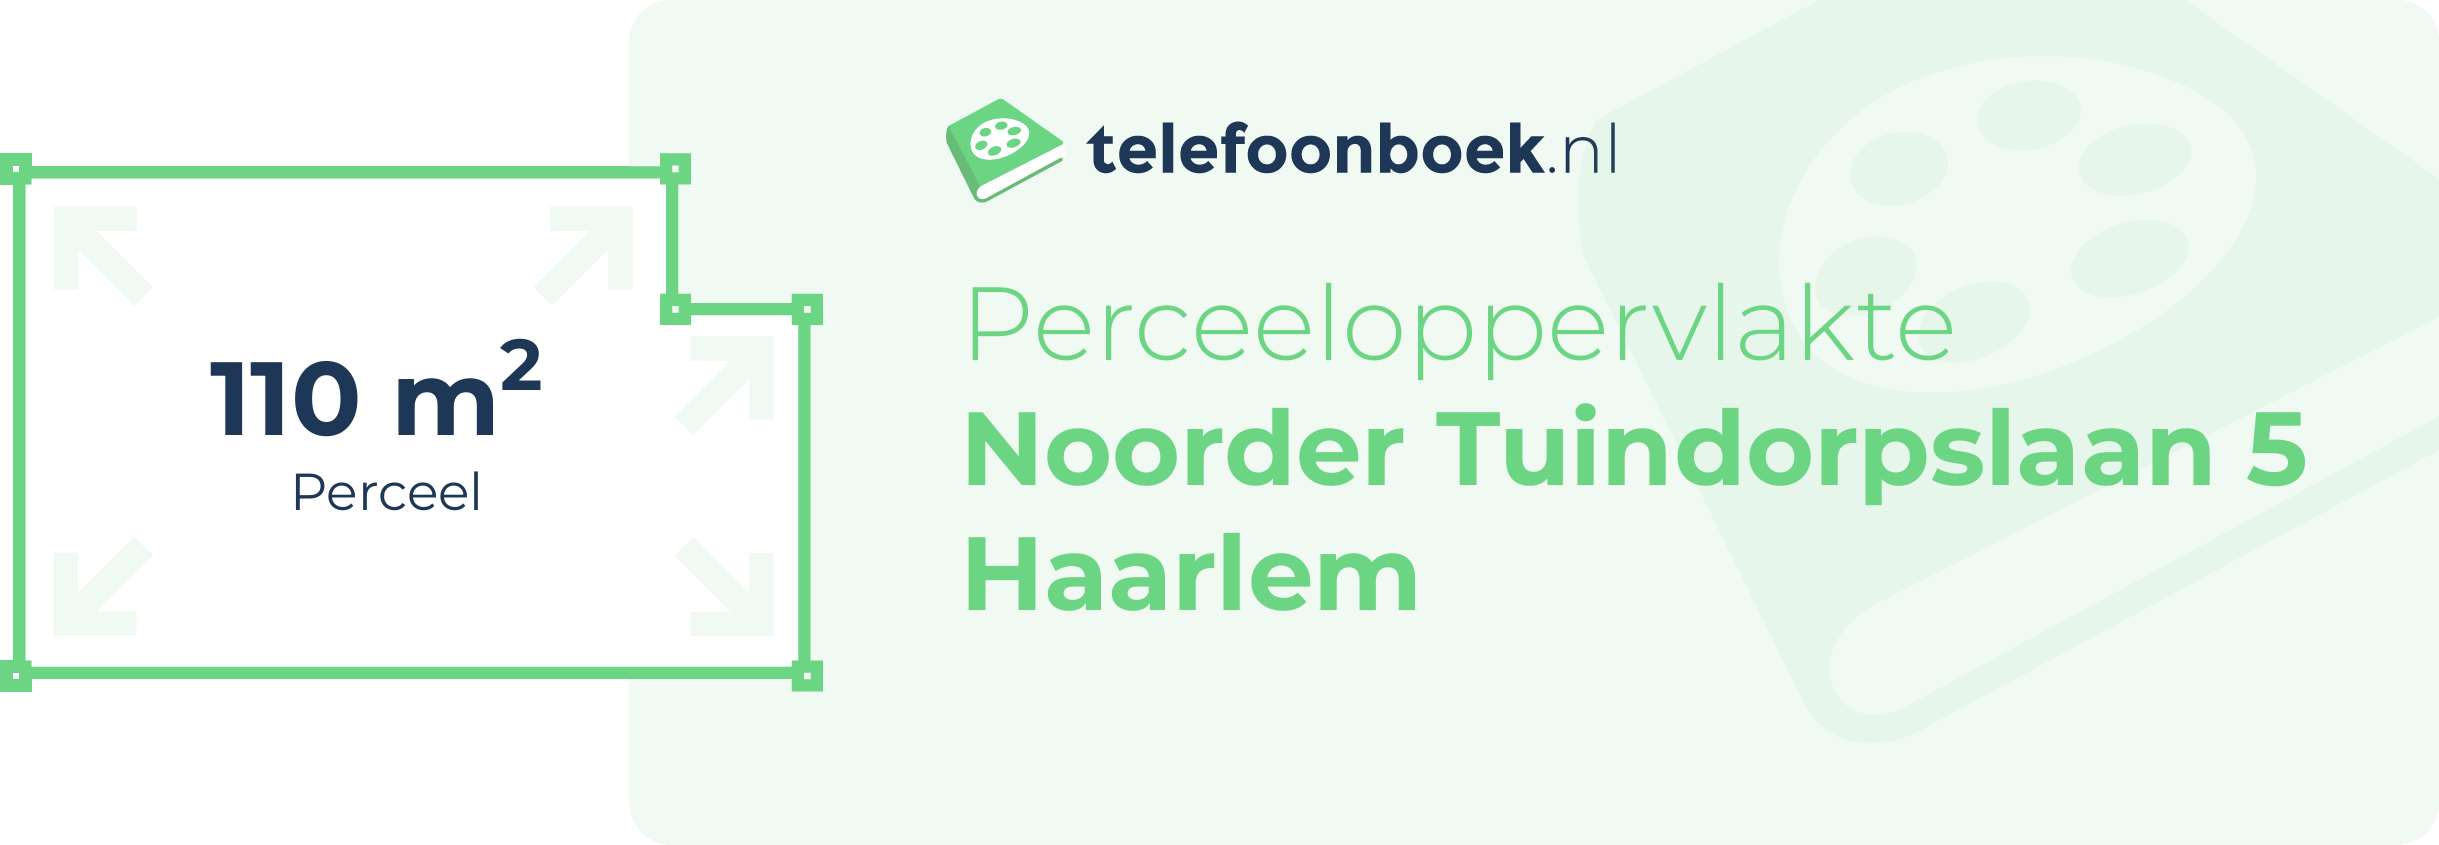 Perceeloppervlakte Noorder Tuindorpslaan 5 Haarlem